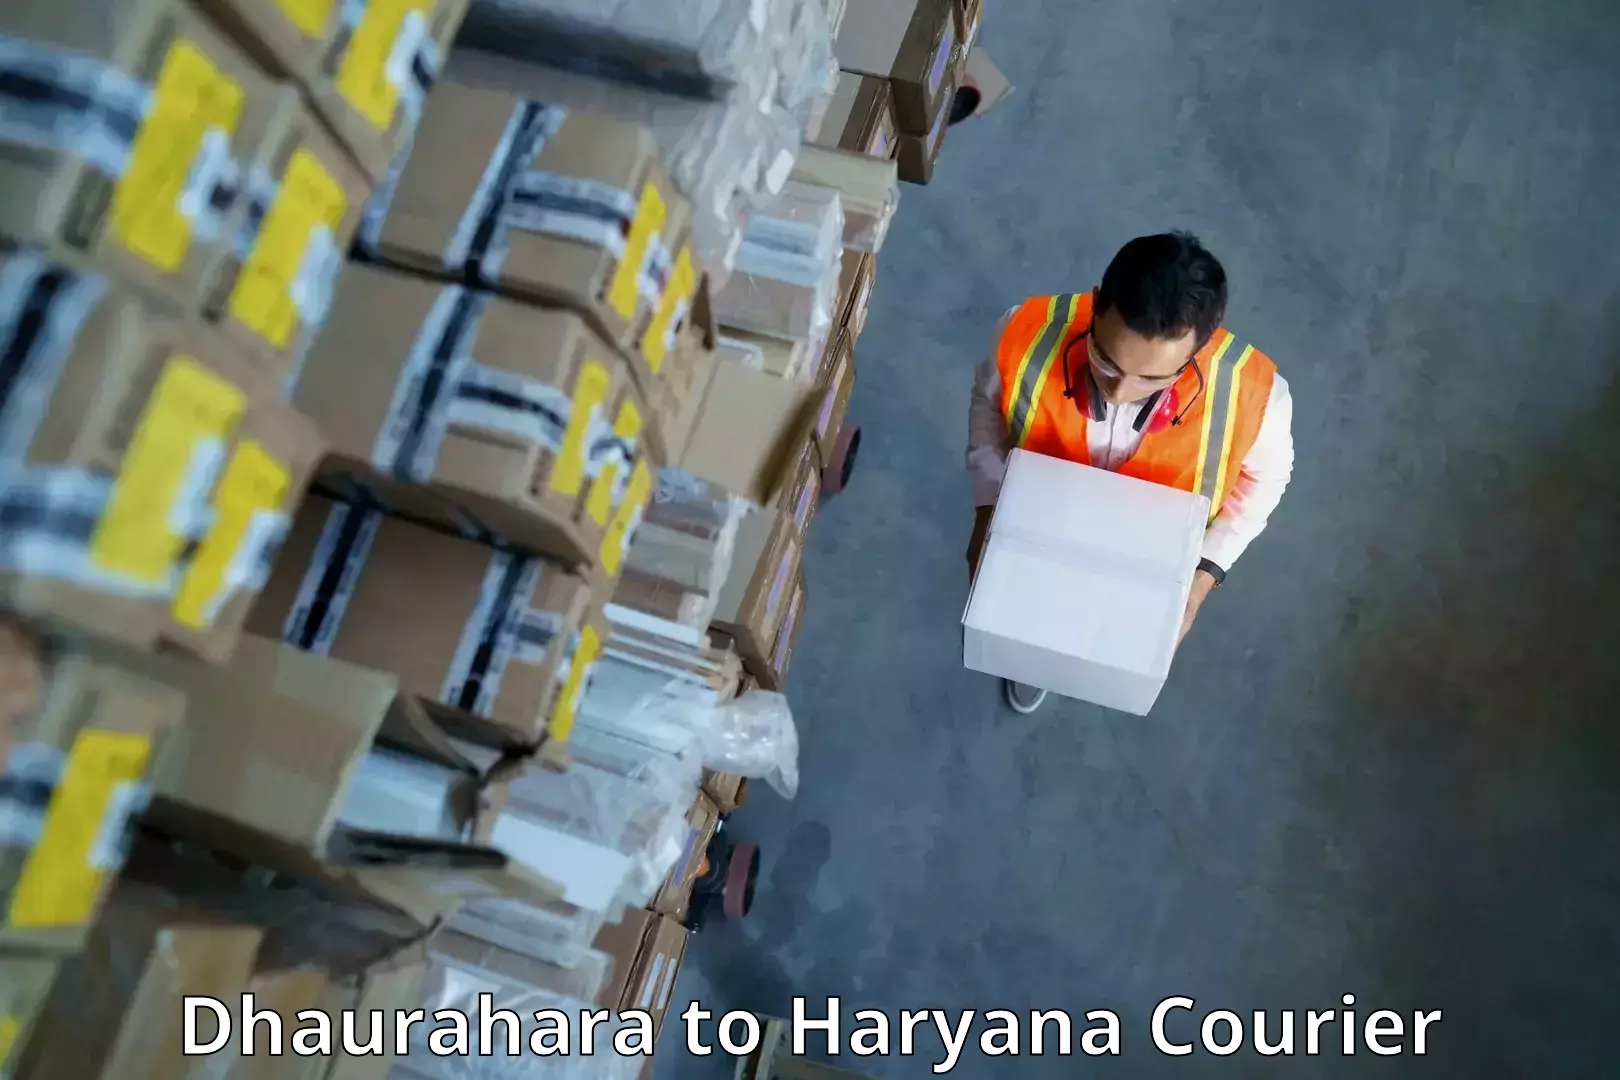 Budget-friendly shipping Dhaurahara to Karnal